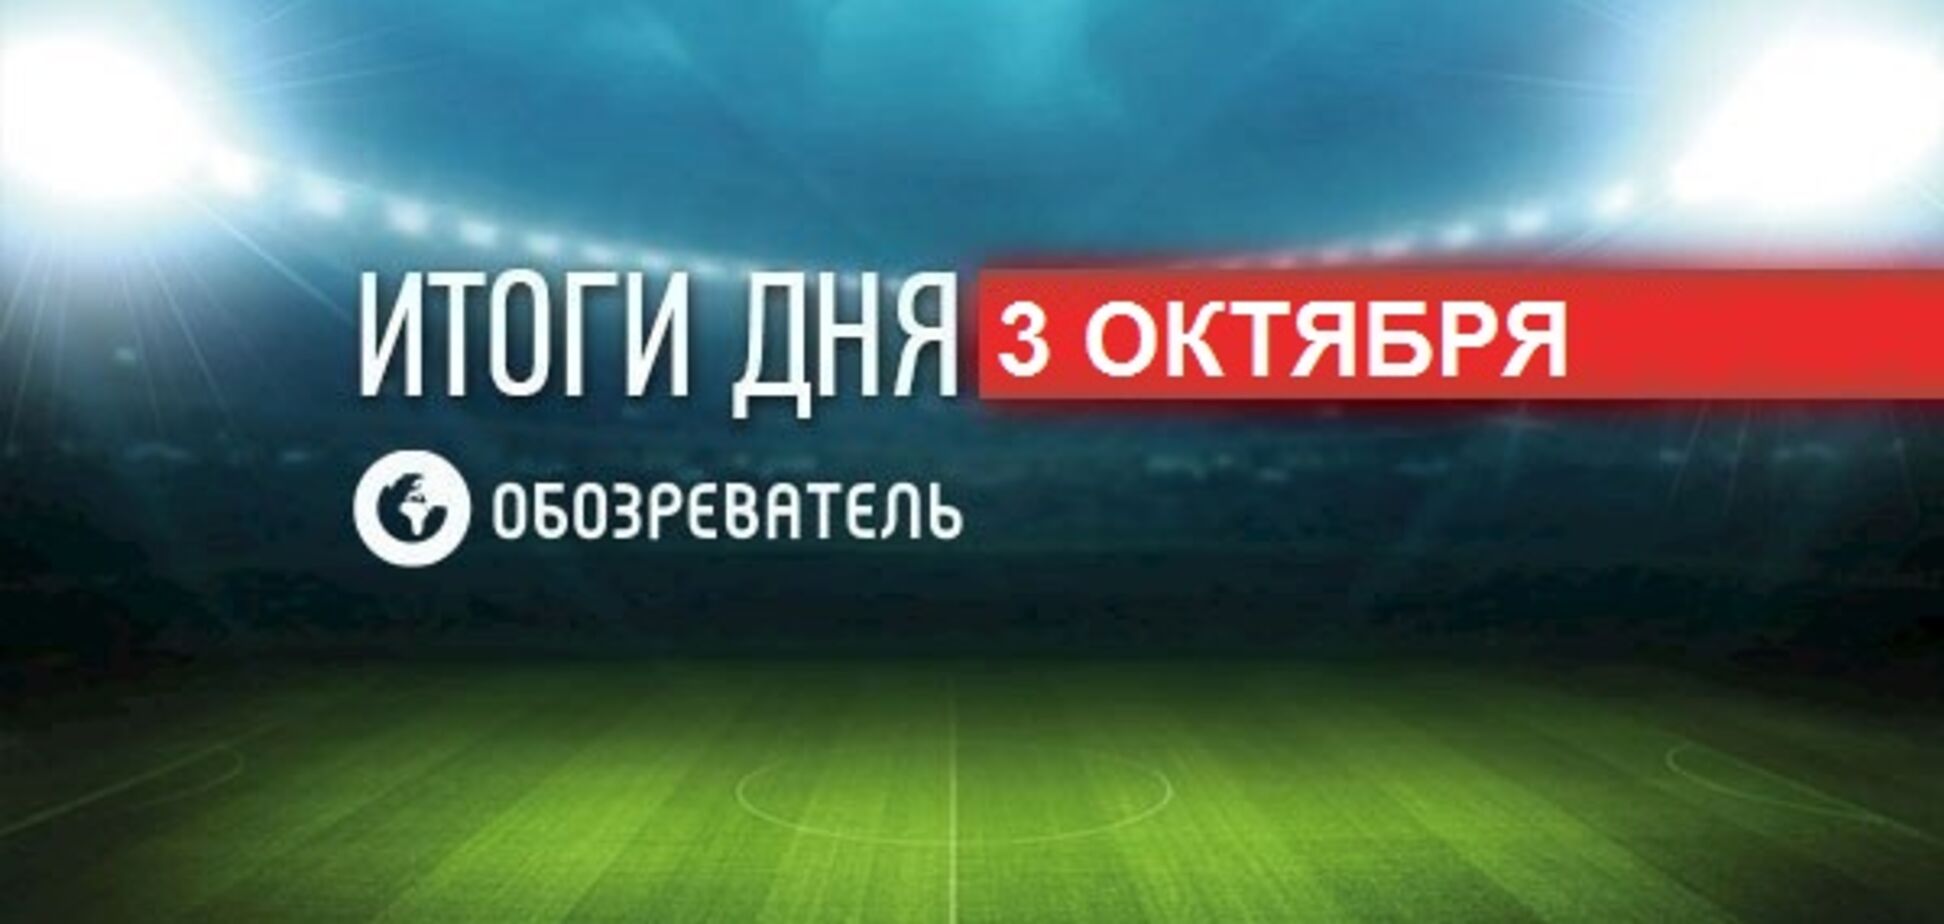 Фанати 'Динамо' оголосили про бойкот матчу збірної України: спортивні підсумки 3 жовтня